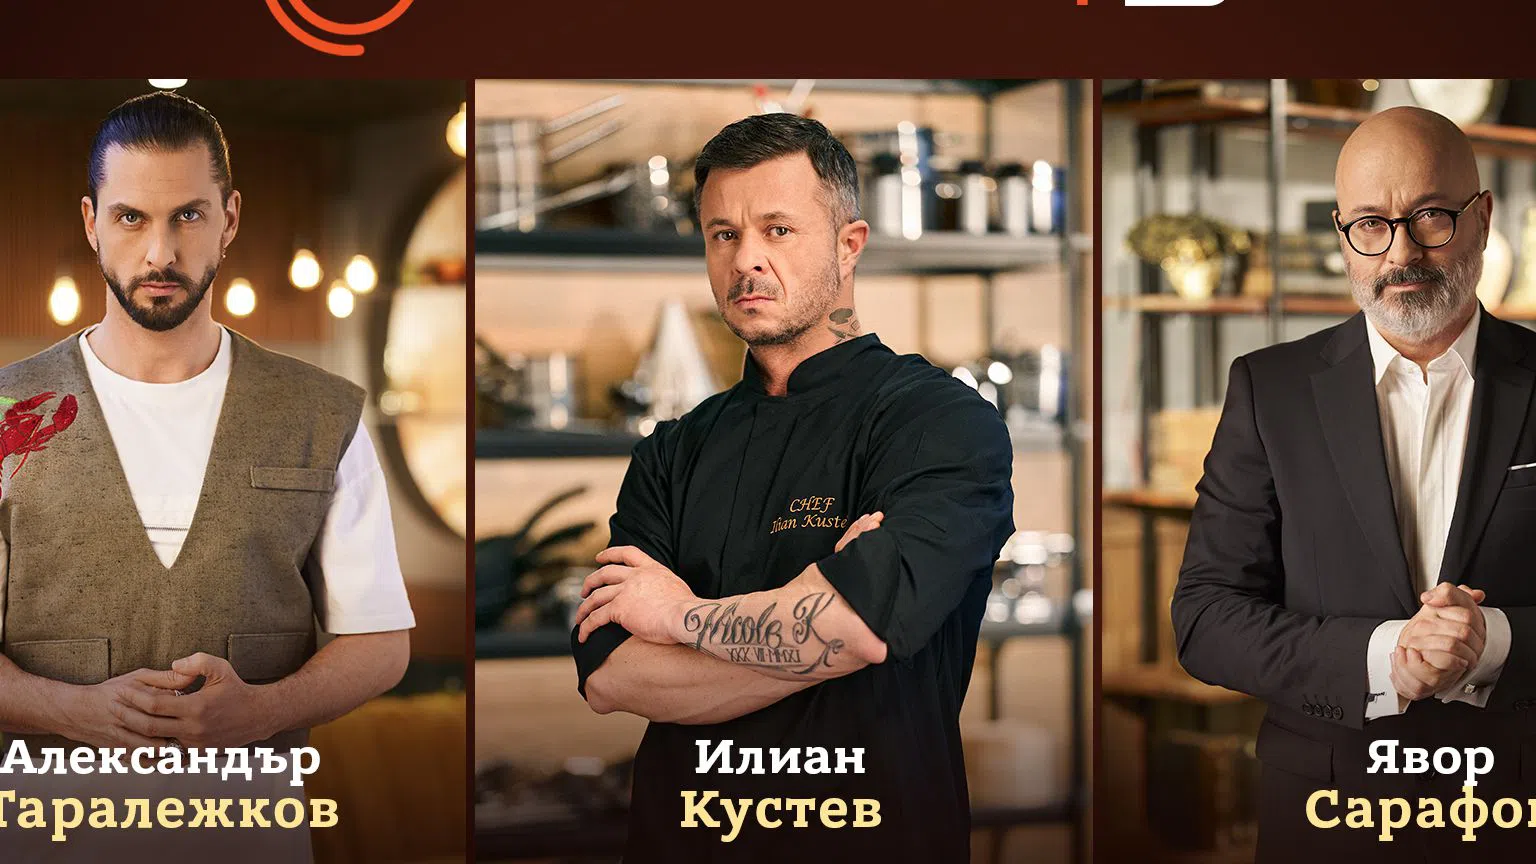 Сhef Илиан Кустев, Chef Александър Таралежков и „шефът на шефовете“ Явор Сарафов ще се присъединят към голямото семейство от световни кулинари в MasterChef .